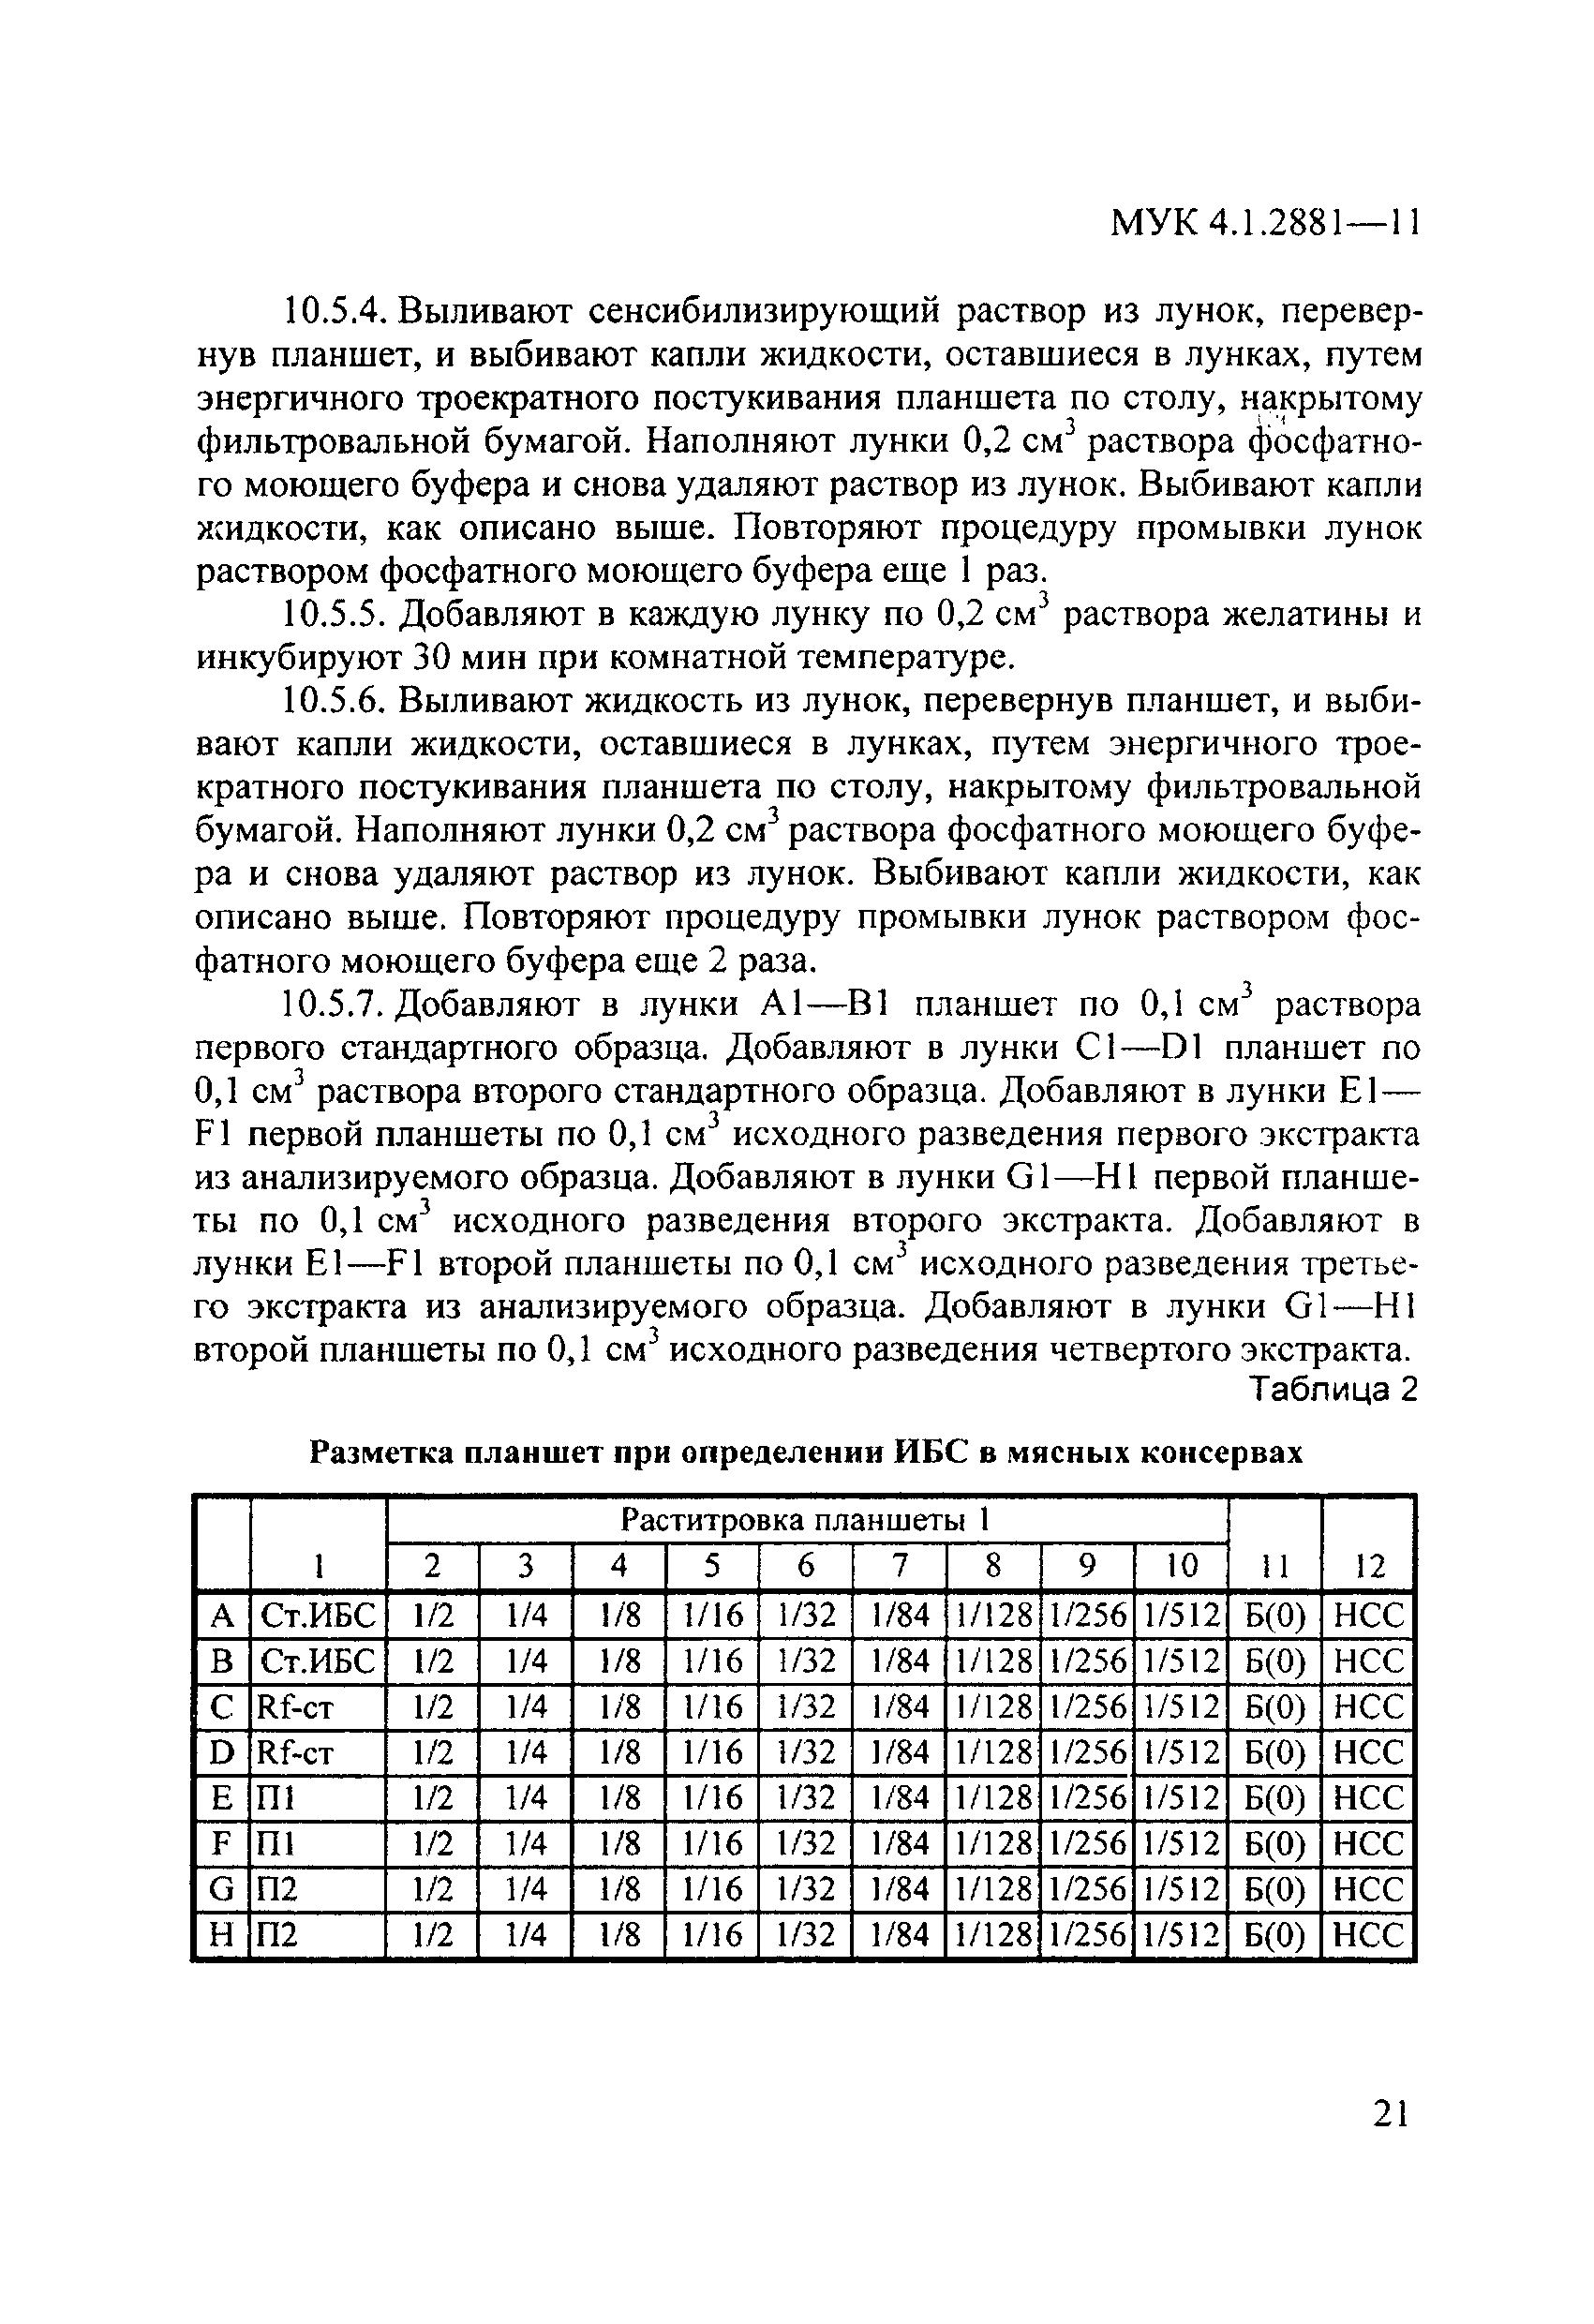 МУК 4.1.2881-11